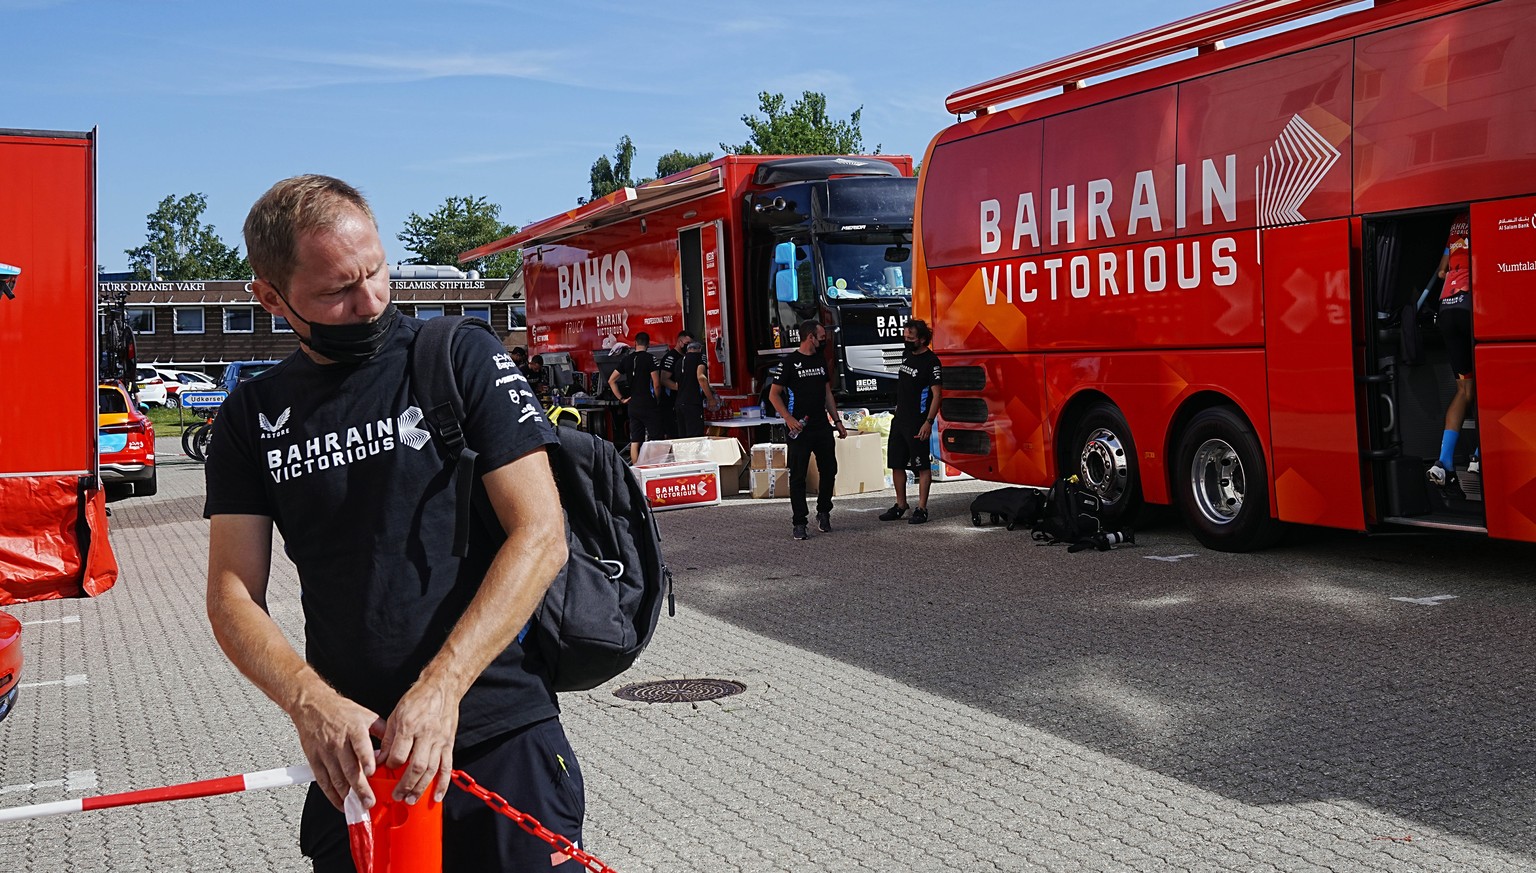 Das Team Bahrain bereitet sich in Kopenhagen auf die 1. Tour-Etappe vor.